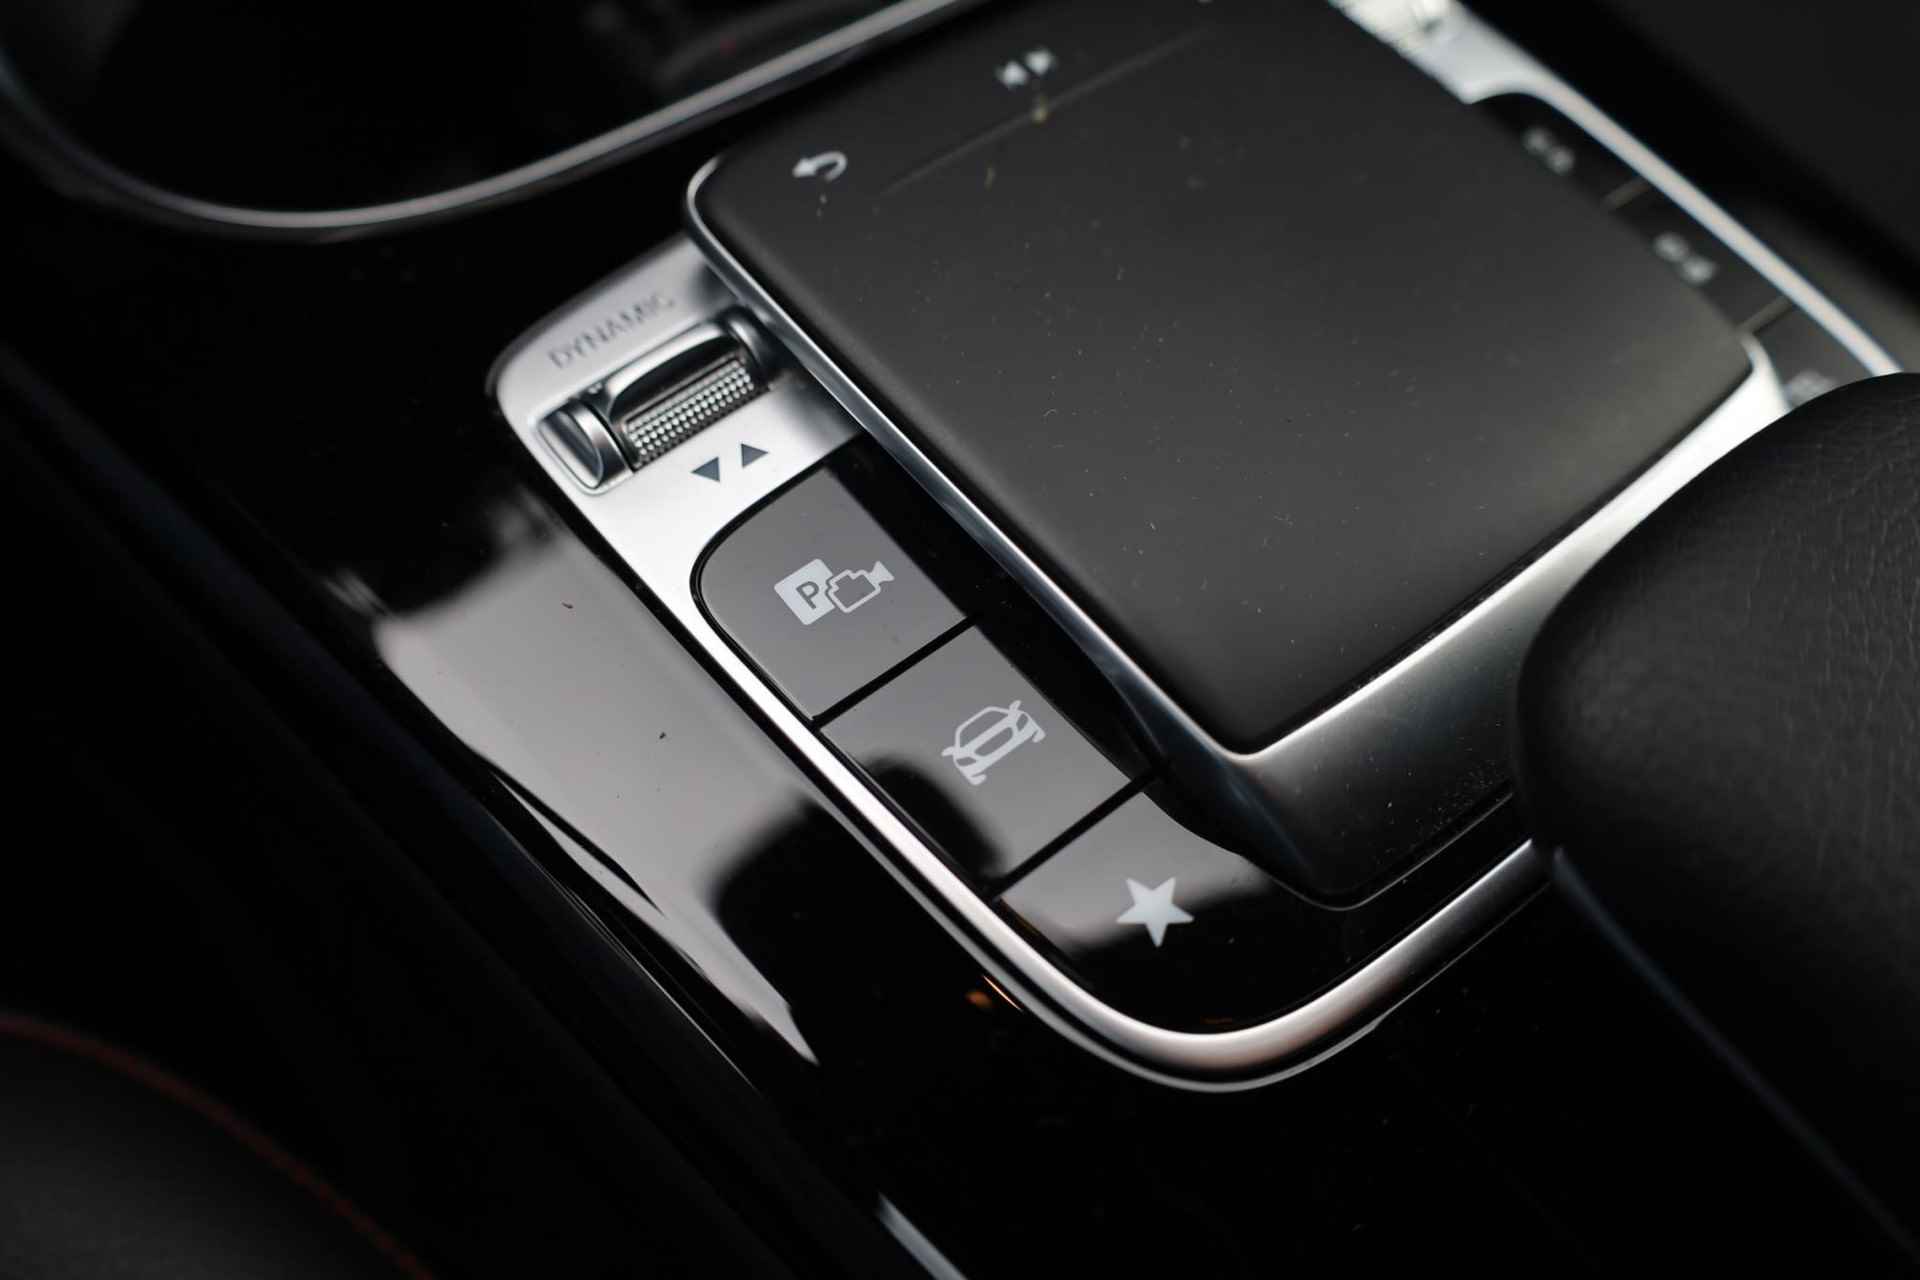 Mercedes-Benz A-klasse 200 Business Solution AMG 120KW/163PK automaat, Leder / alcantara, winterset LMV digitaal dashboard, navigatie, LED verlichting voor en achter, 18" LMV, stoelverwarming, parkeersensoren voor en achter, AMG bumpers - 34/44